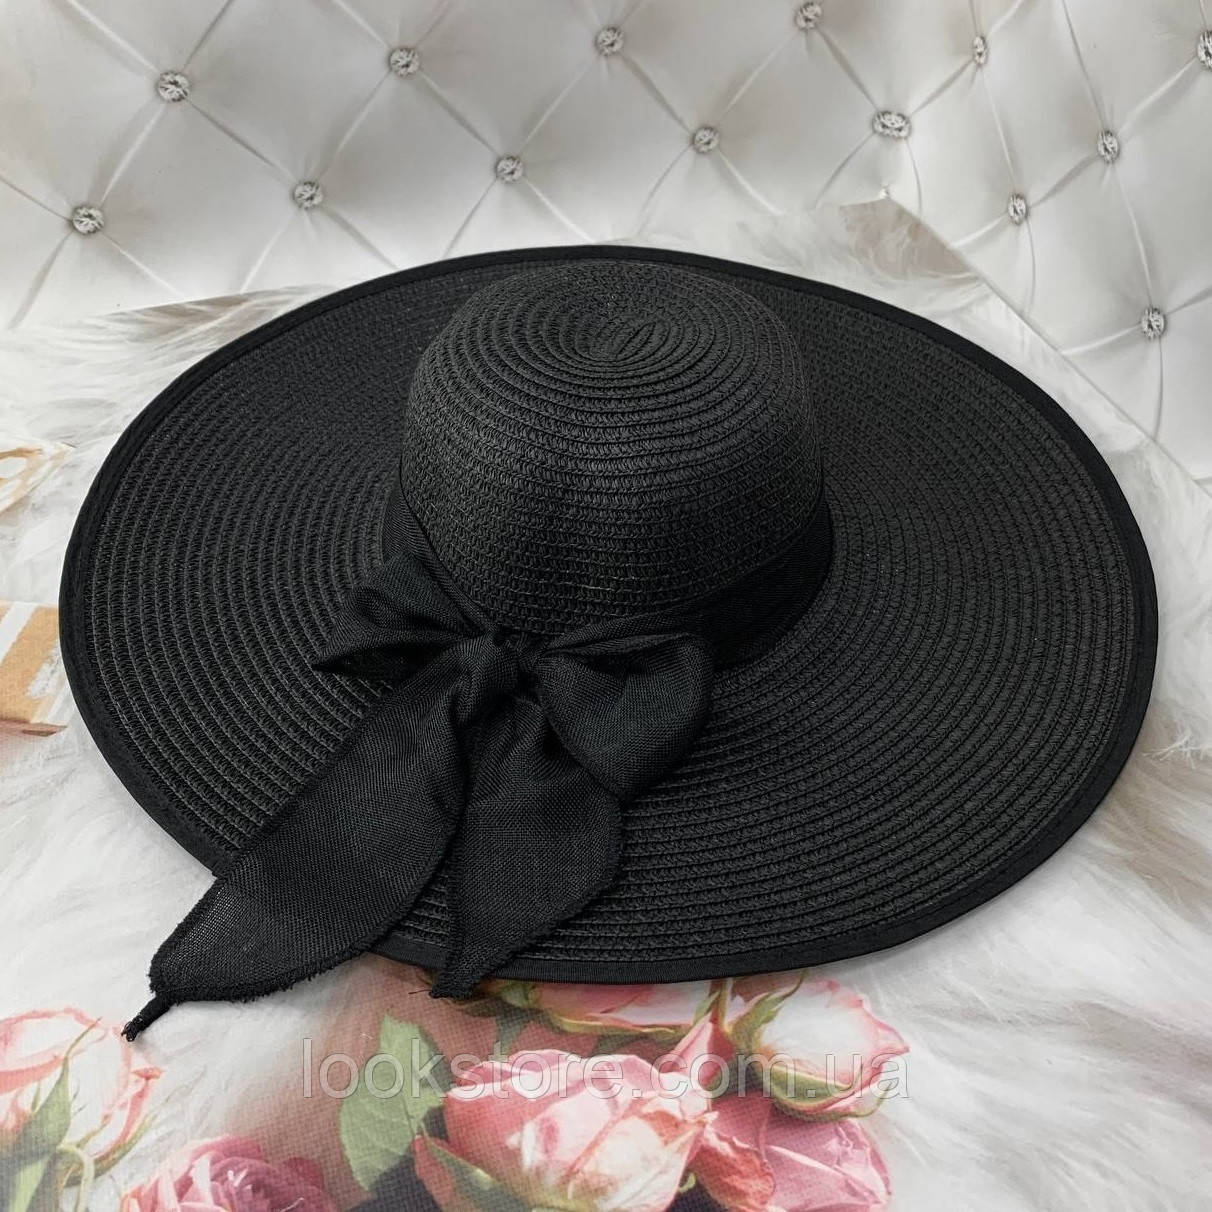 Жіночий широкополий капелюх з полями 15 см і бантом чорний